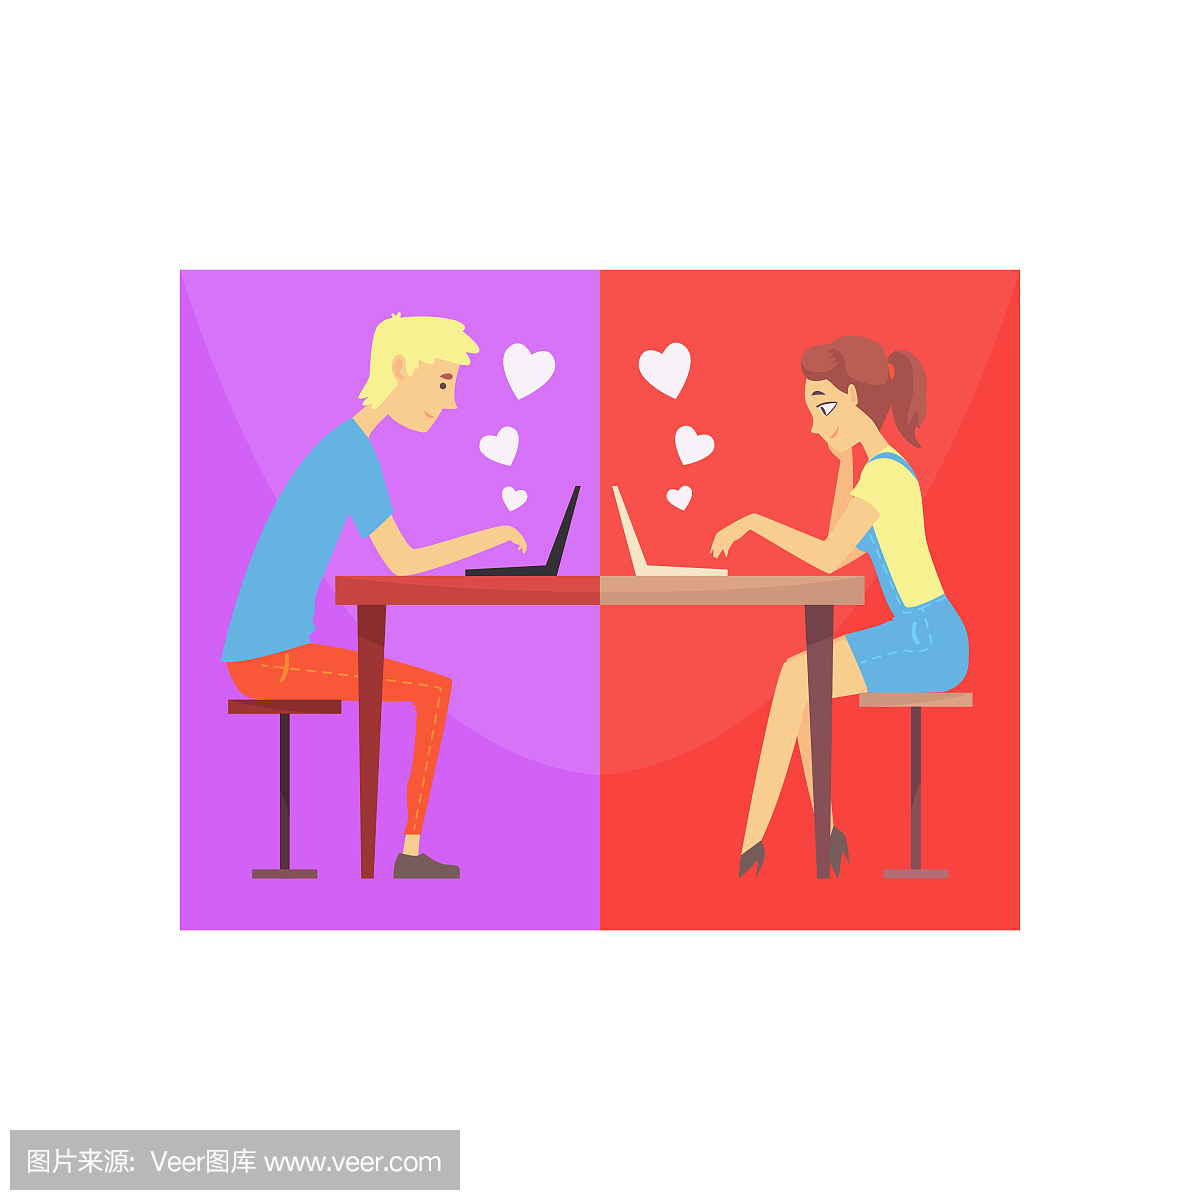 幸福的男人和女人在网上聊天的爱,坐在桌前。